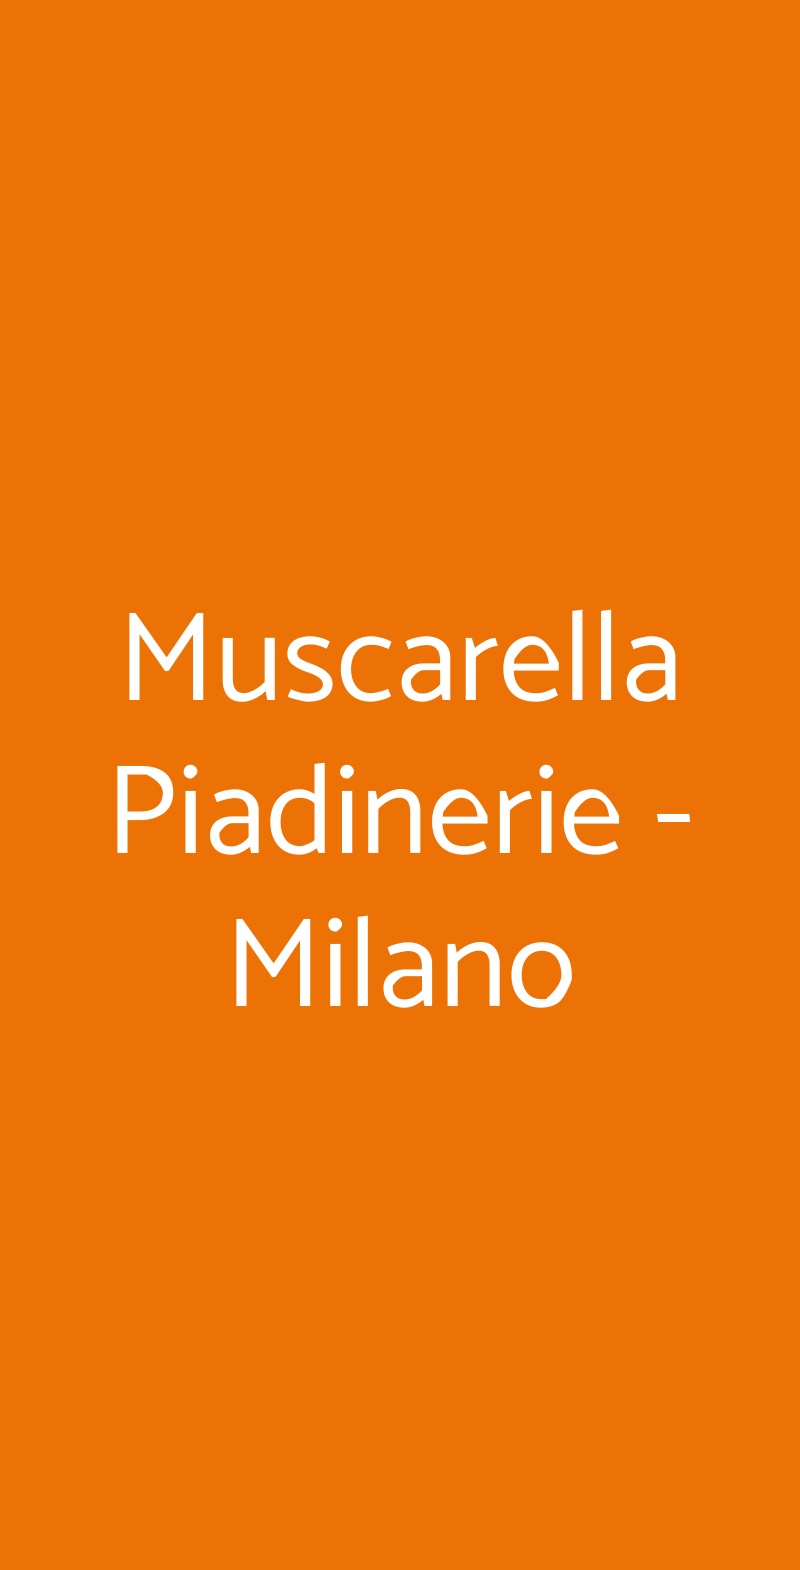 Muscarella Piadinerie - Milano Milano menù 1 pagina